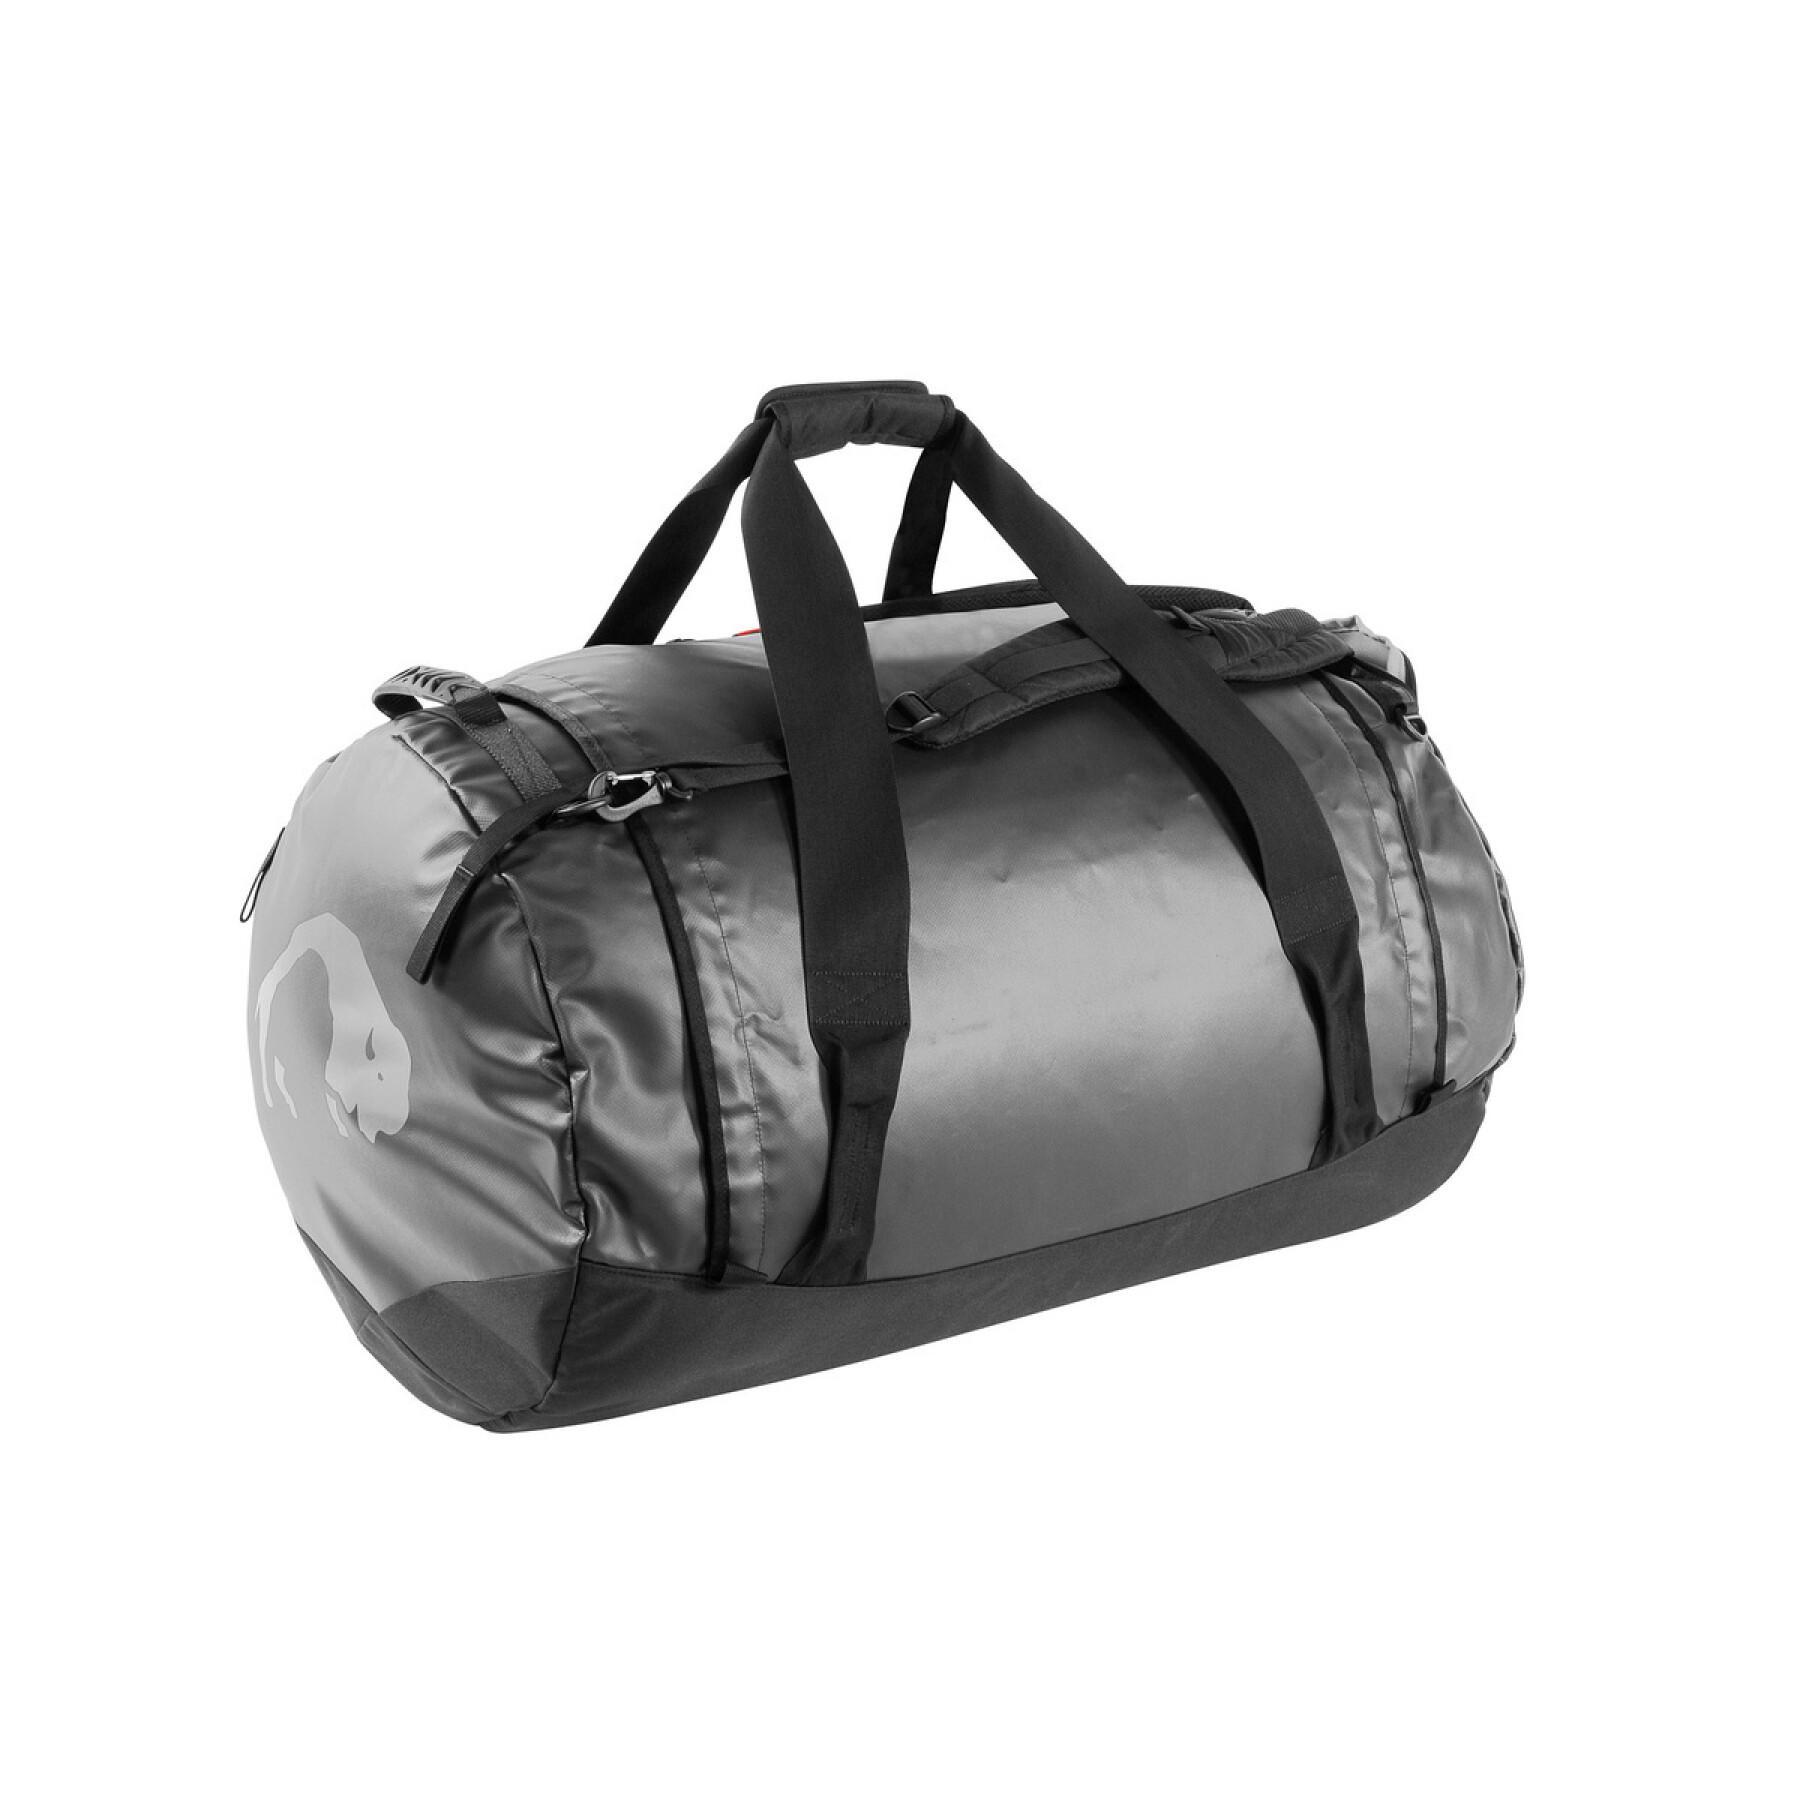 Sports bag Tatonka Barrel XL